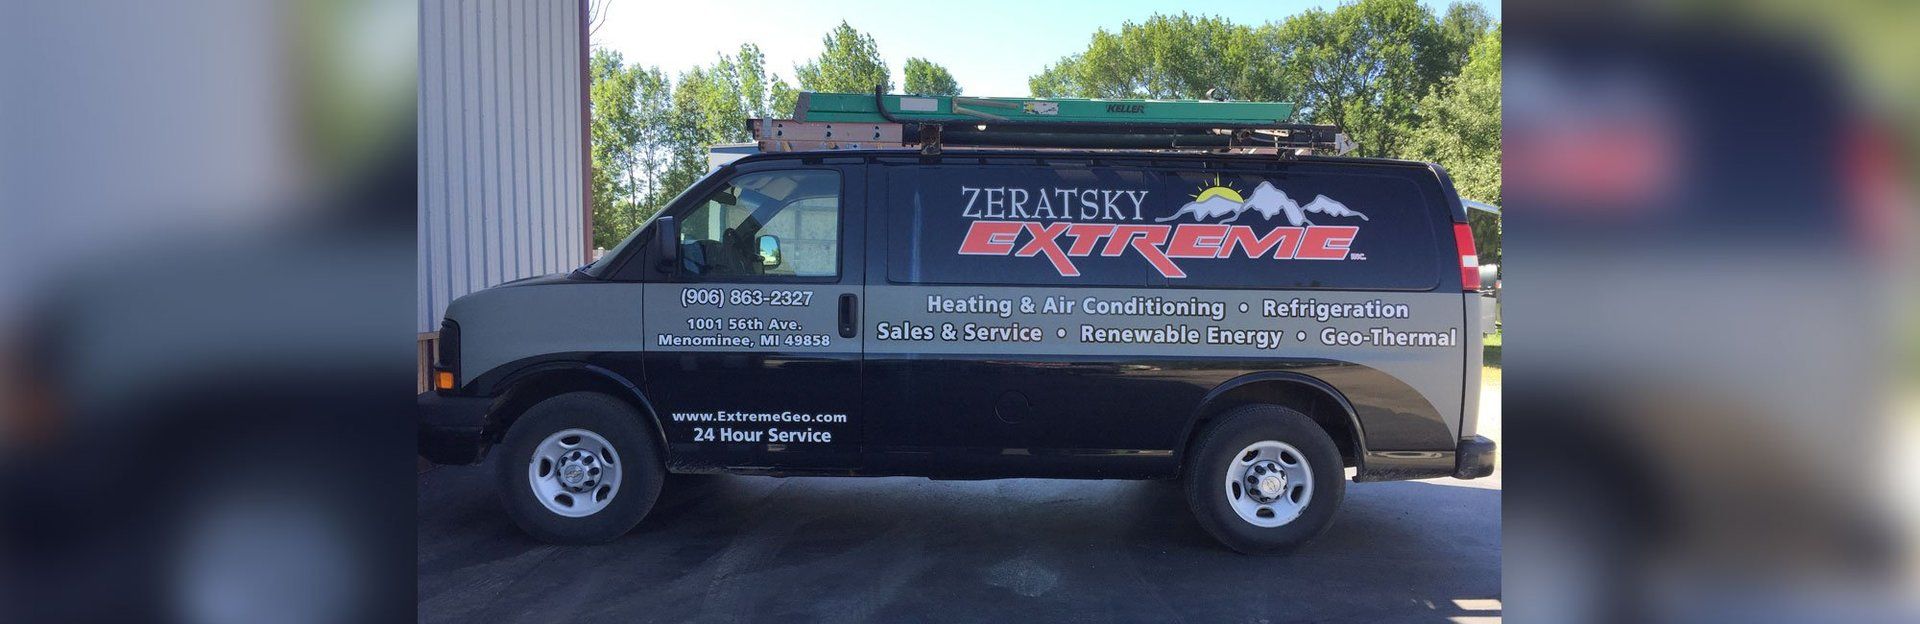 Zeratsky Extreme Heating & Cooling Inc vehicle